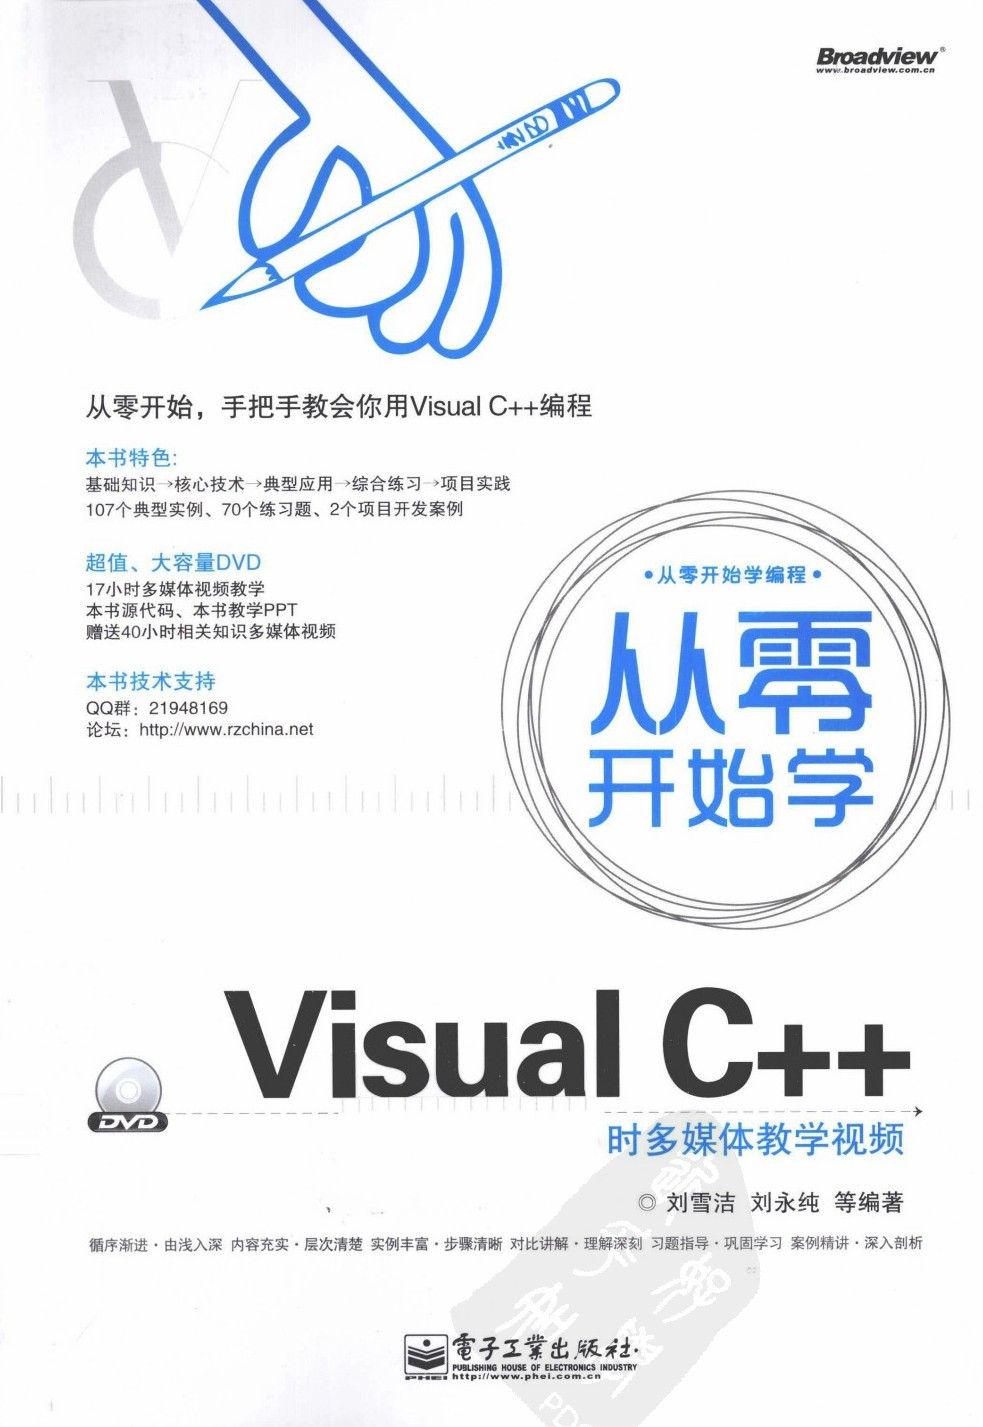 《从零开始学Visual C++》刘雪洁等_扫描版_pdf电子书下载